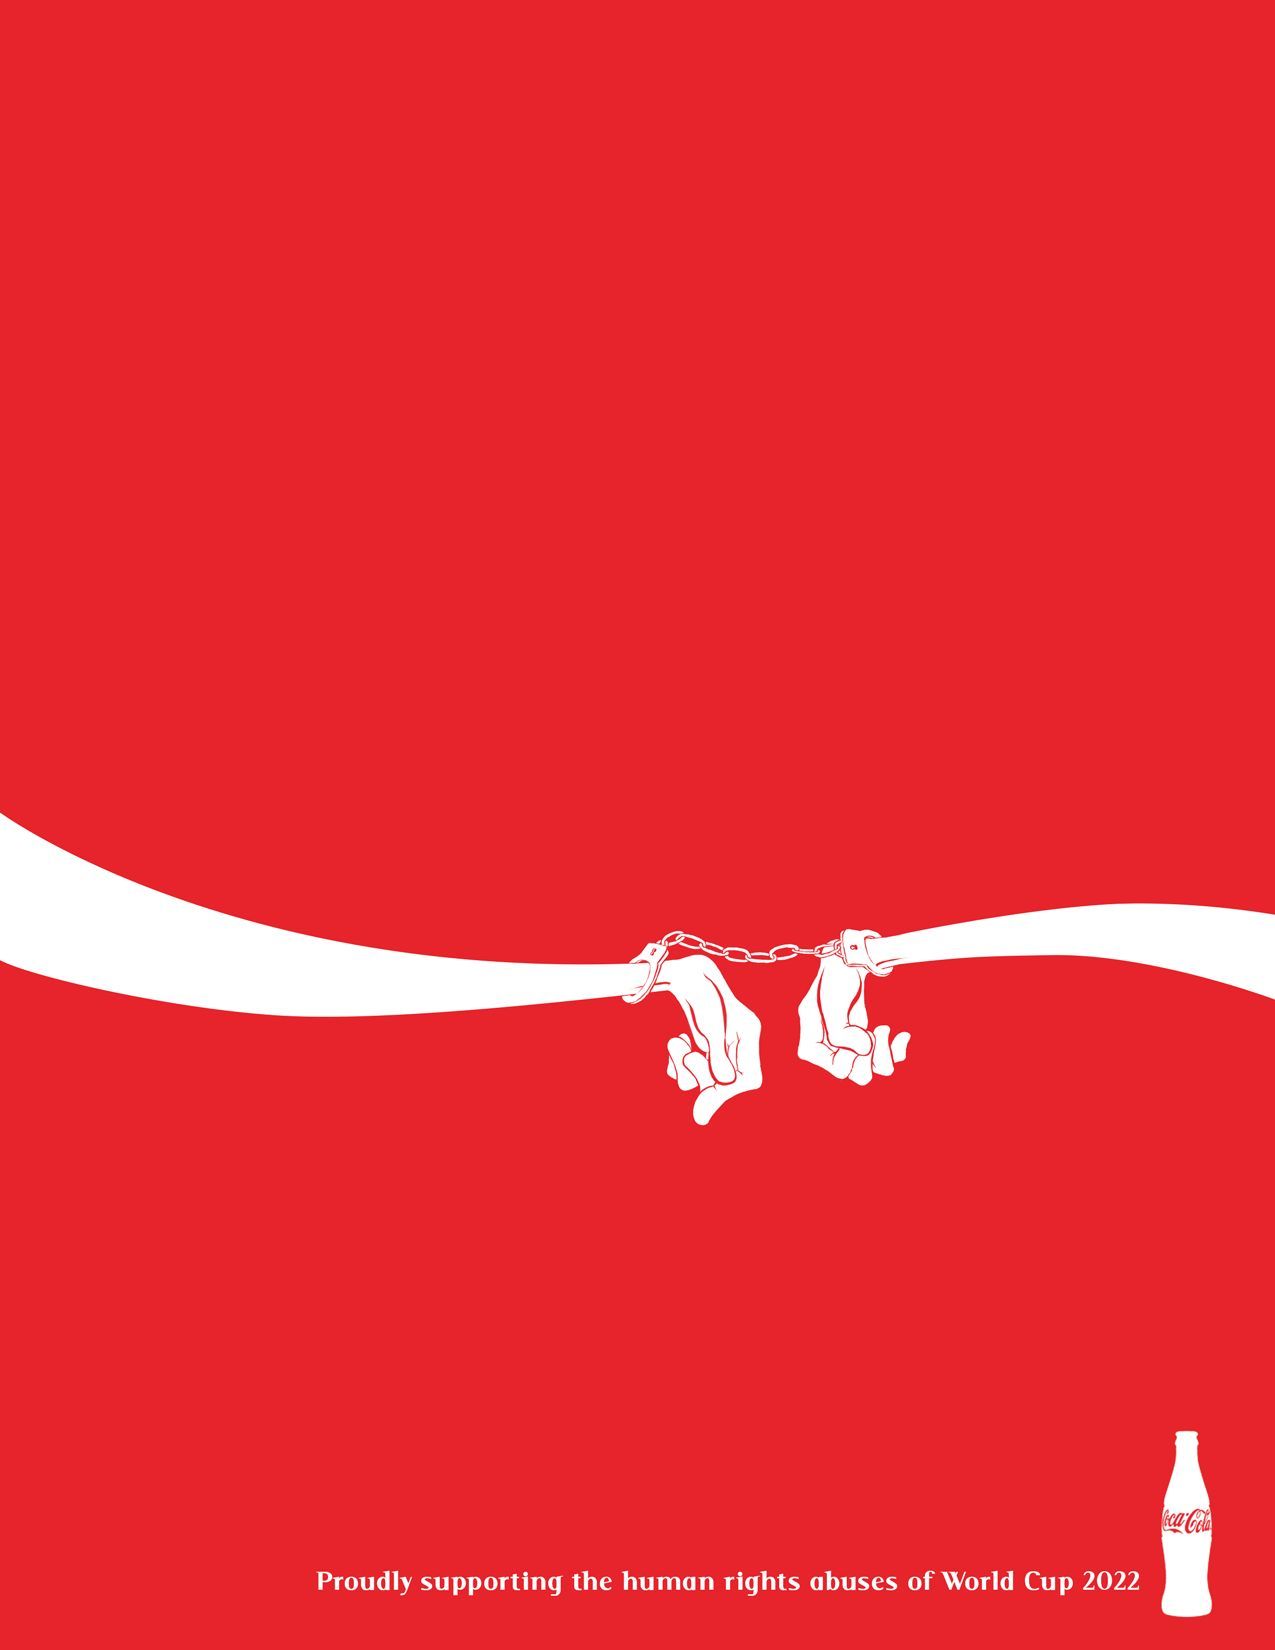 Coke's slogan is 